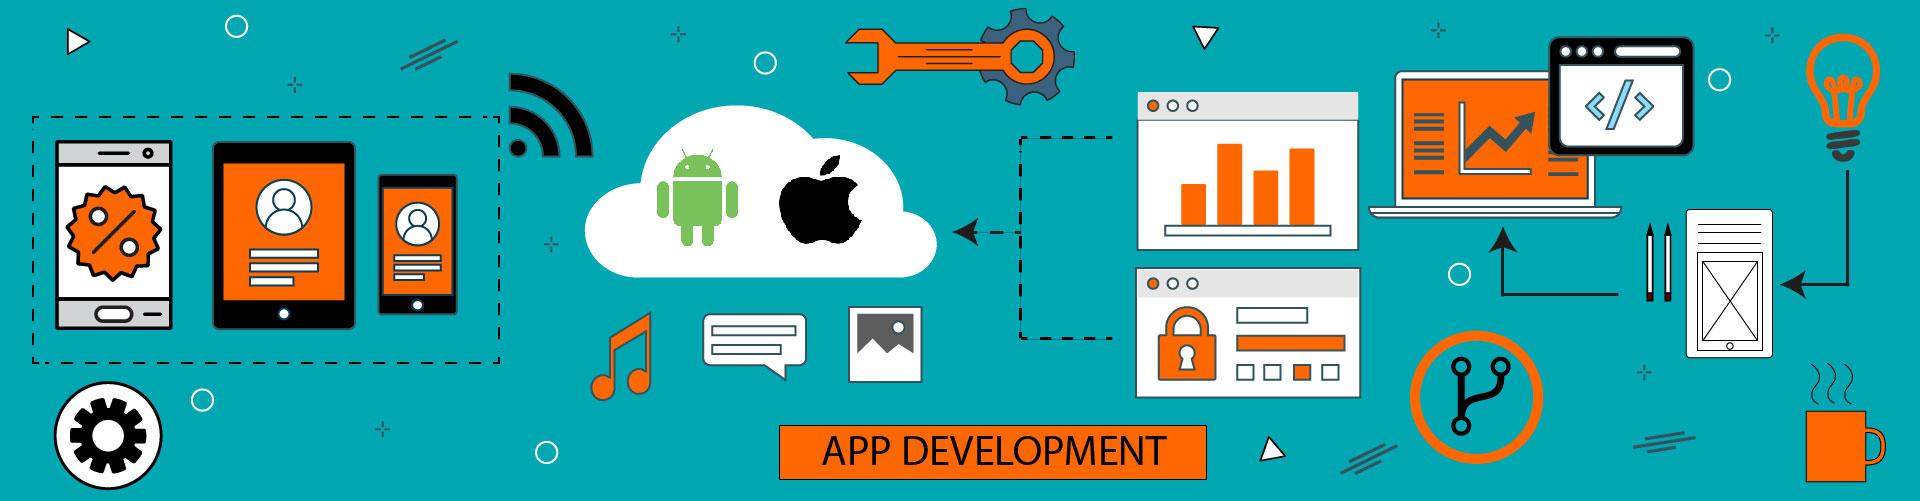 Mobile App Development Banner Image